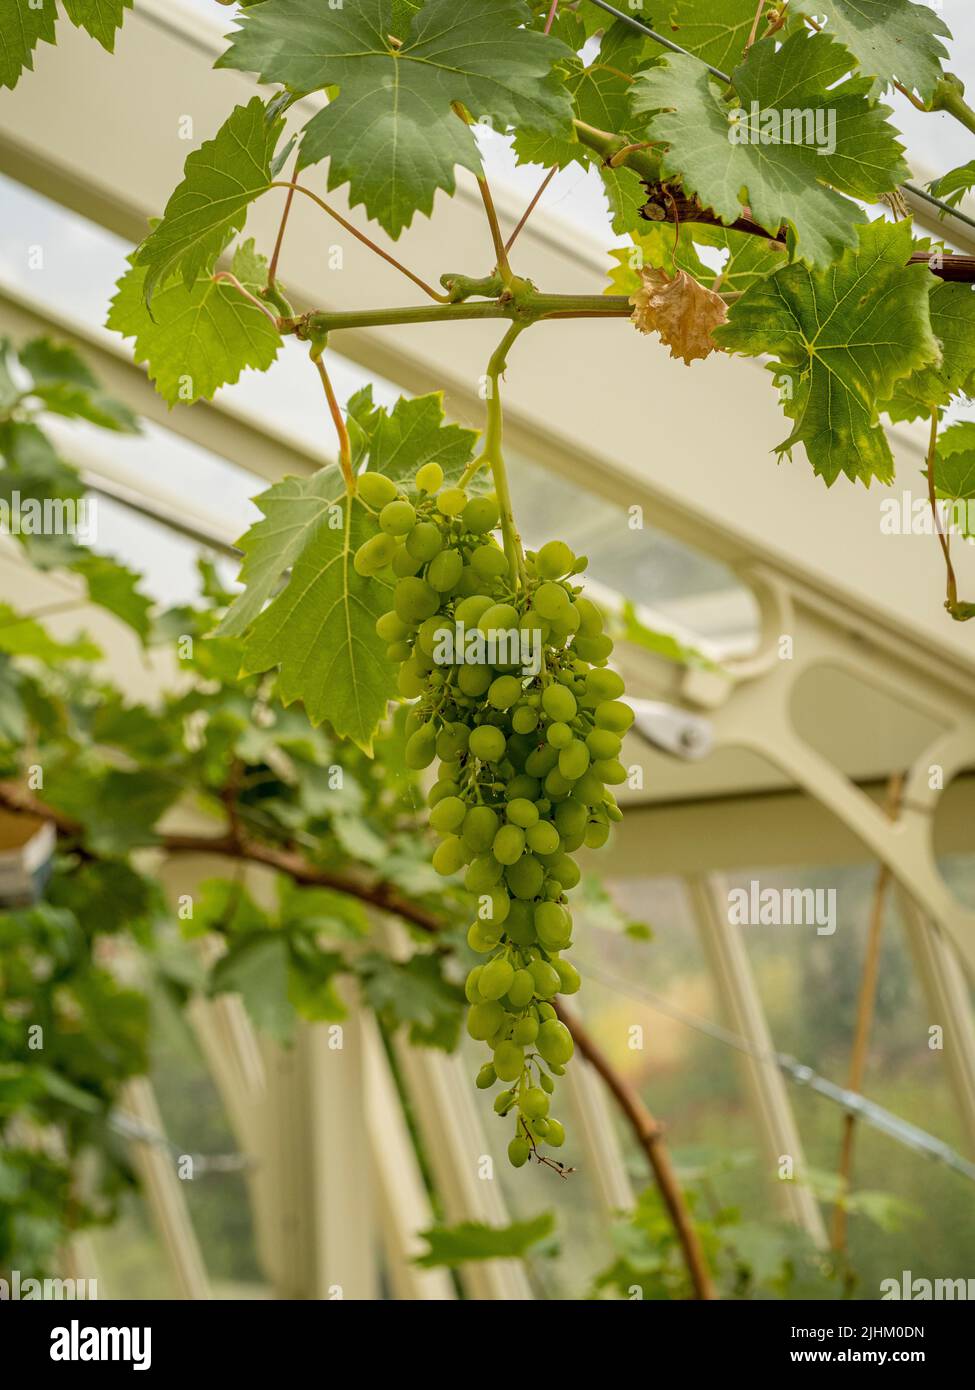 Racimos de uvas verdes colgando de la vid en un invernadero británico. Foto de stock